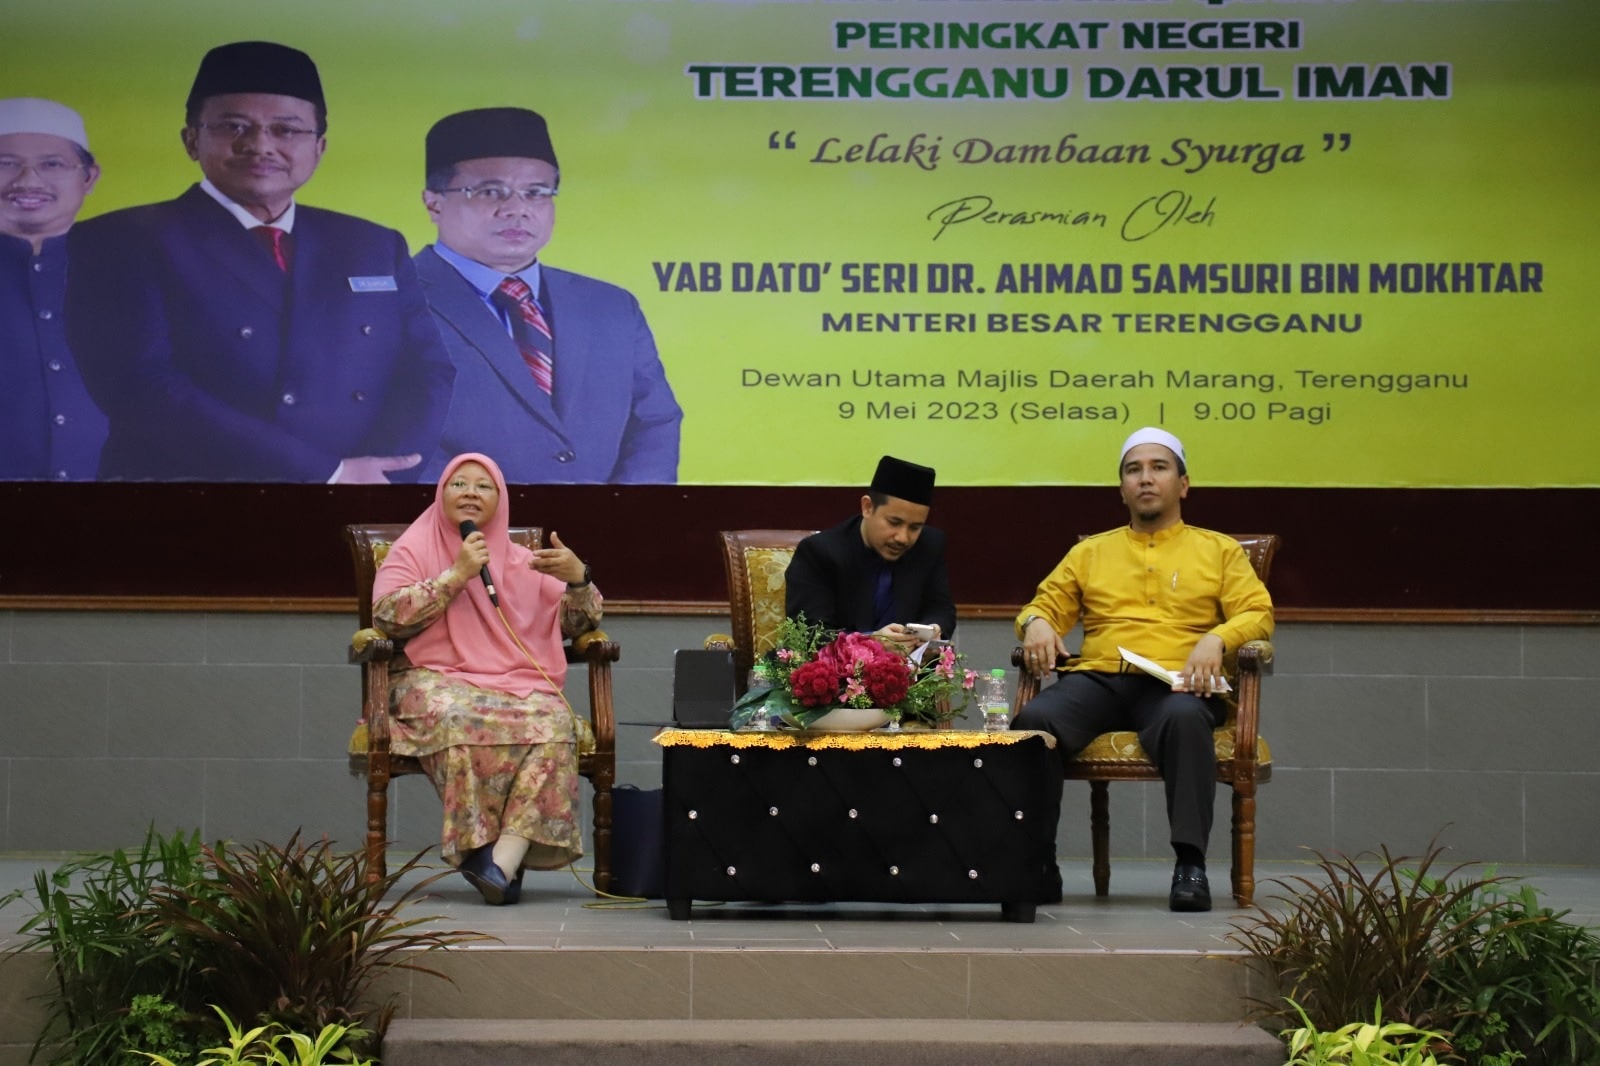 Seminar Lelaki Qawwam Peringkat Negeri Terengganu Darul Iman Lelaki Dambaan Syurga5 min